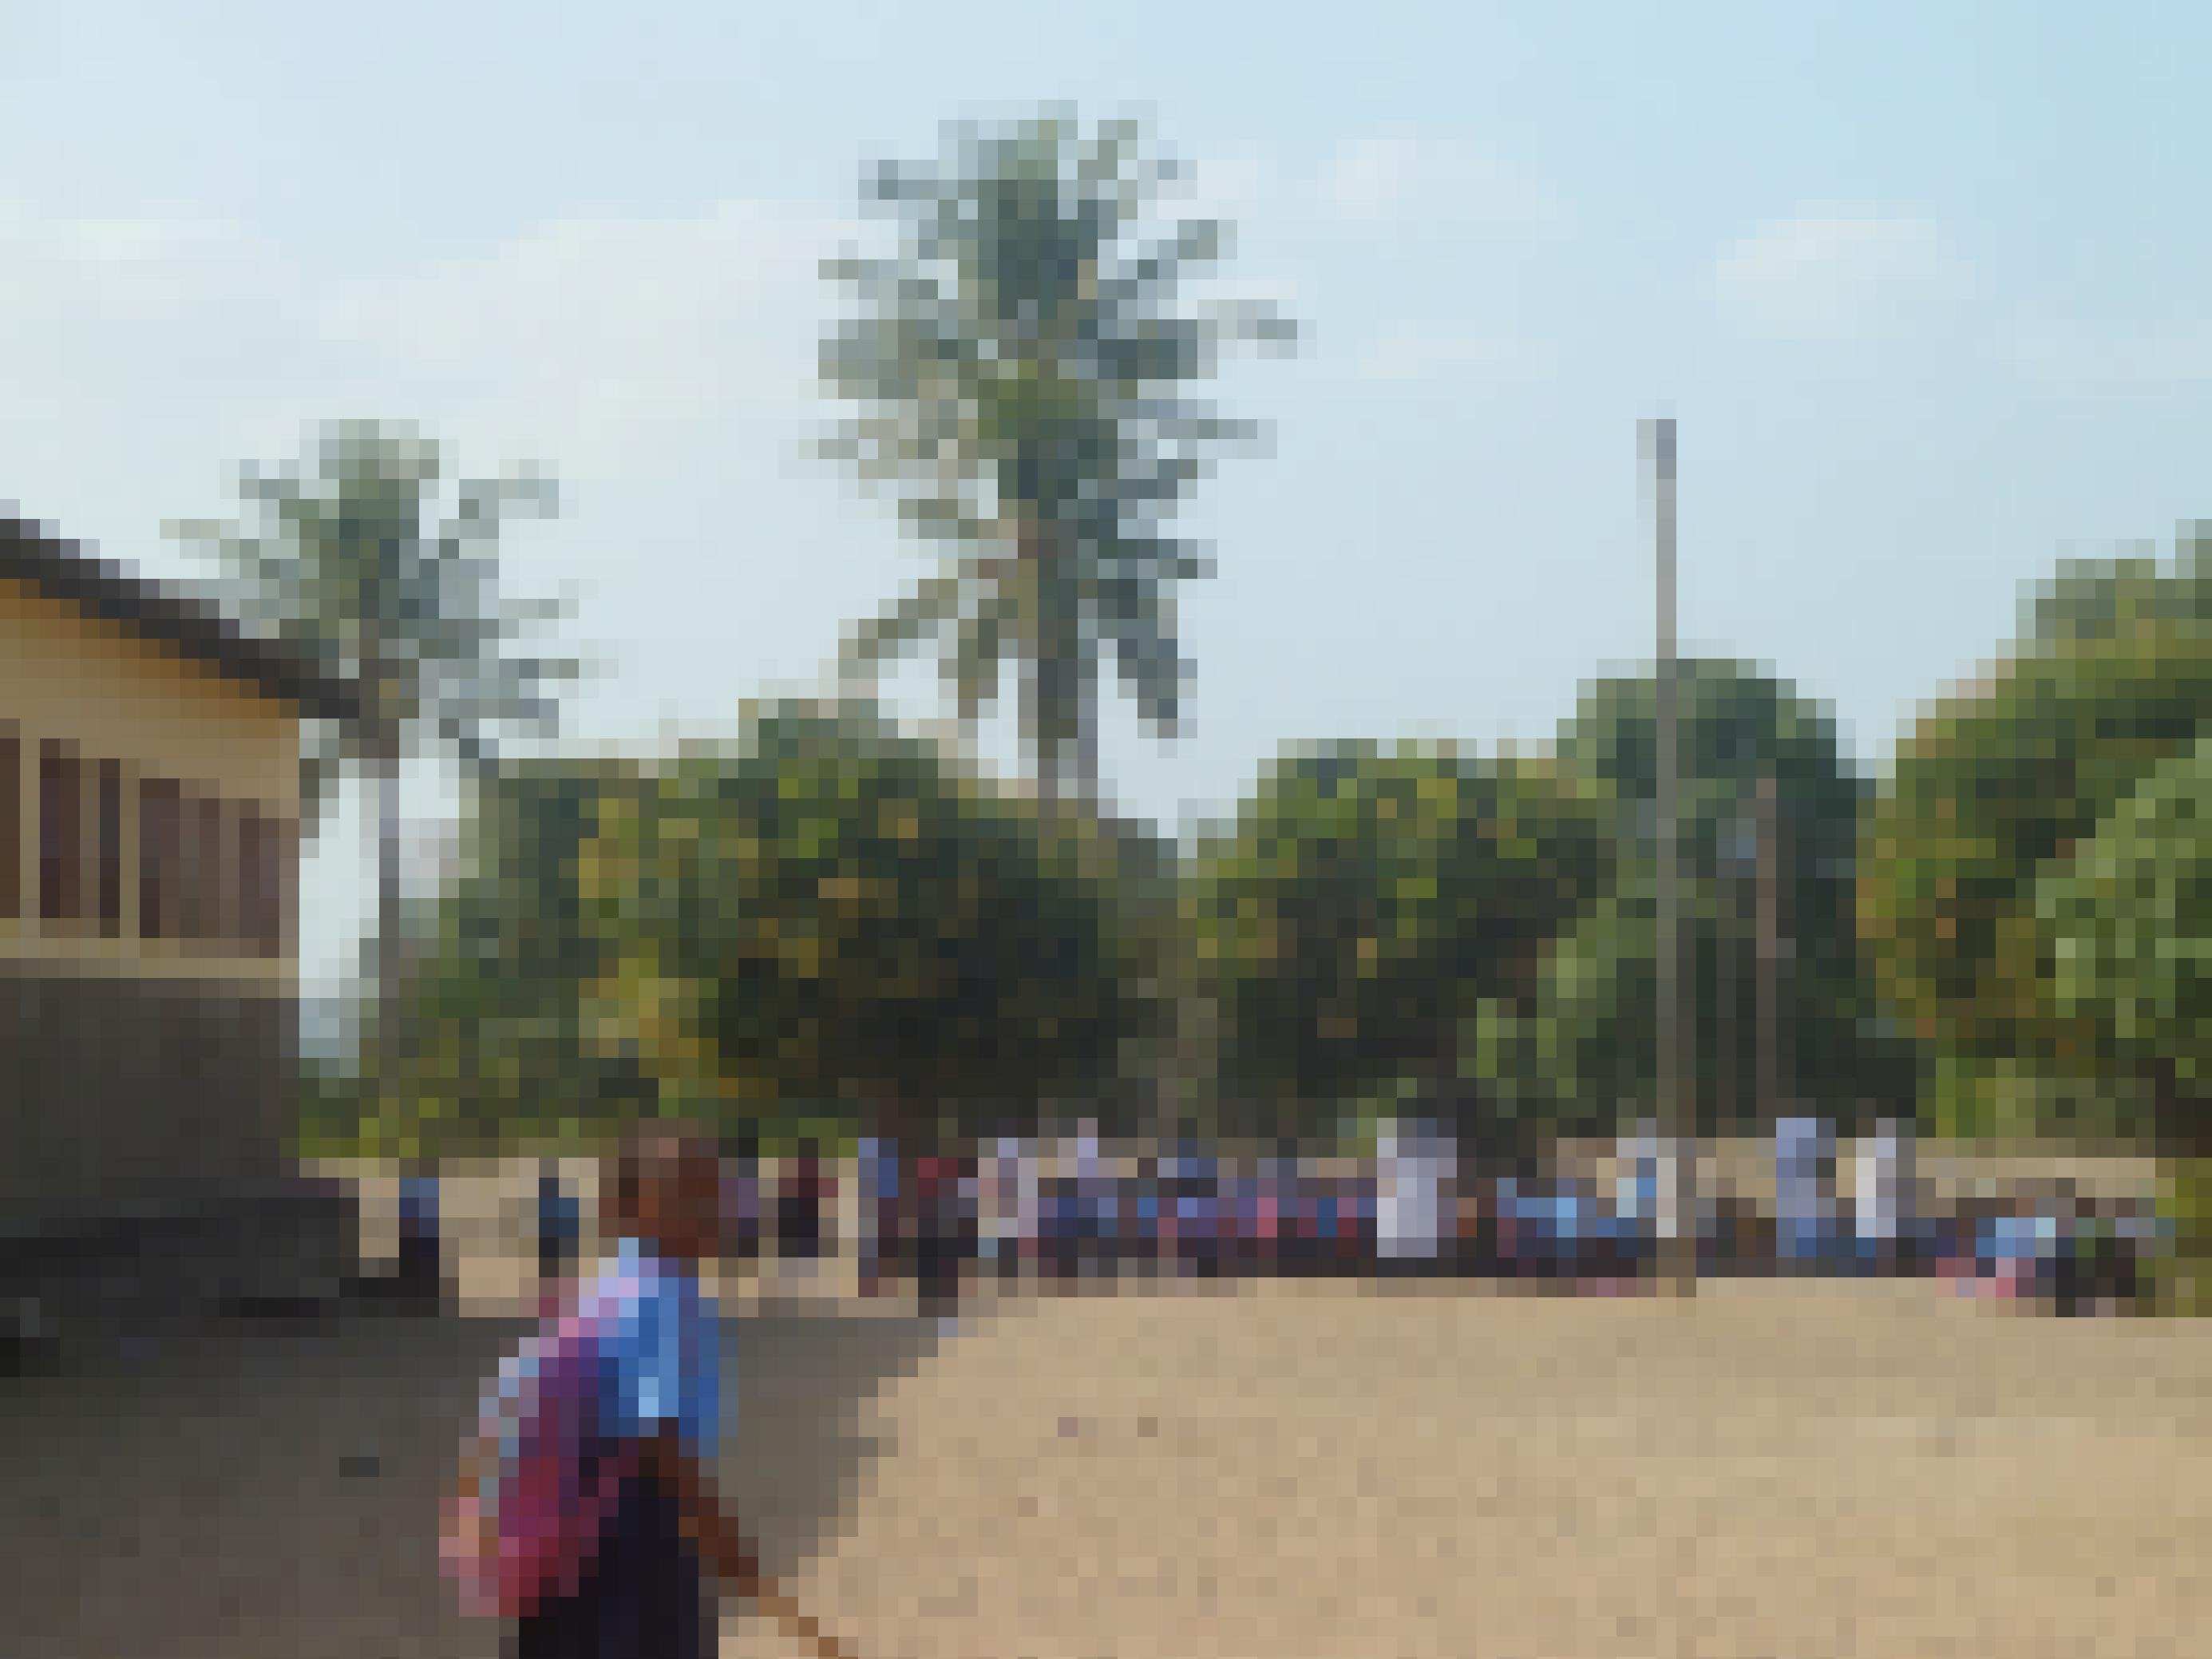 Auf dem sandigen Schulhof, unter Palmen, haben sich Schülerinnen zum Unterricht versammelt